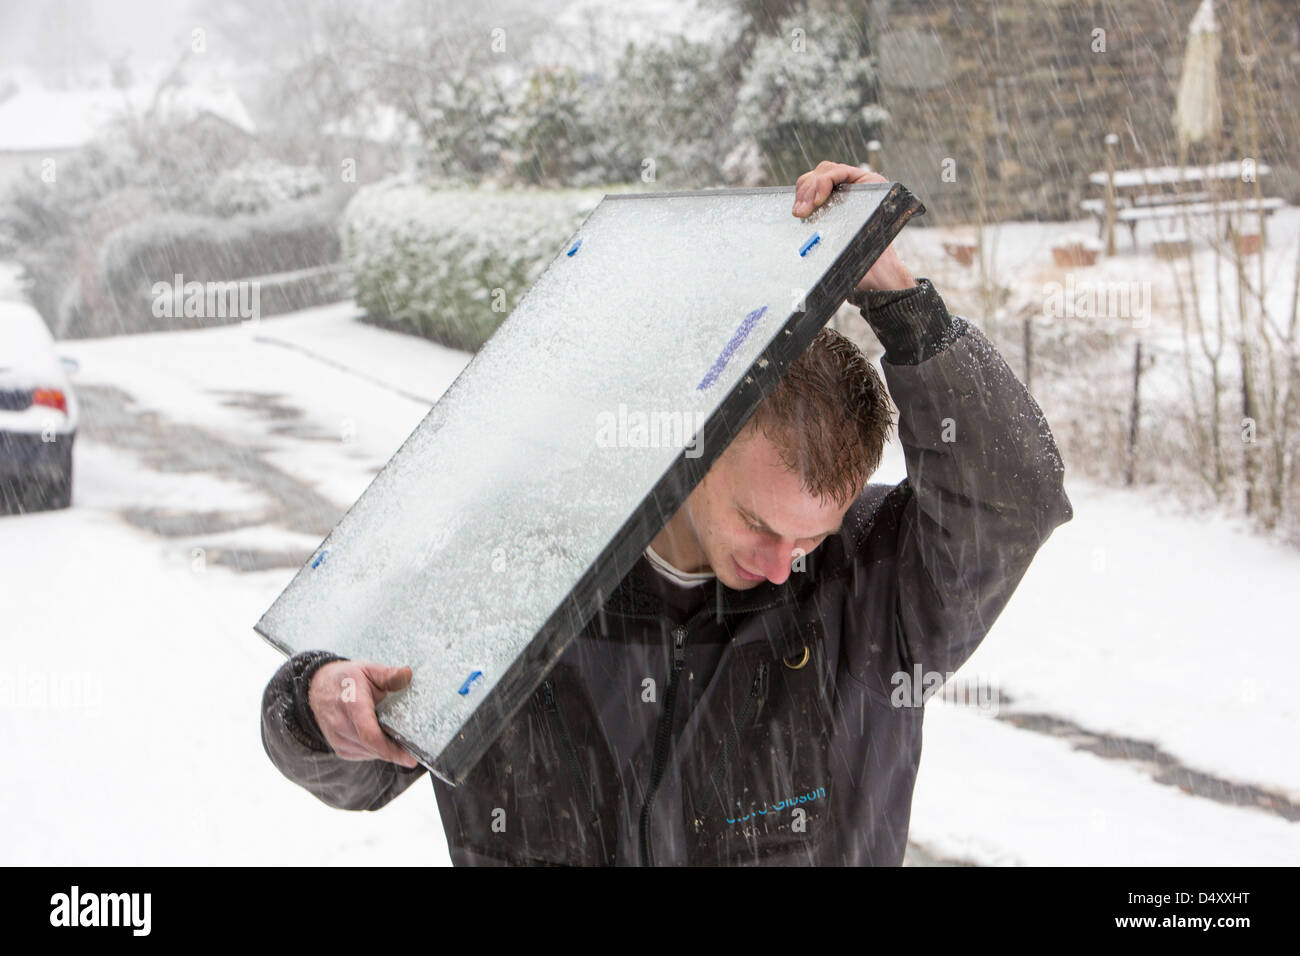 Vitriers exerçant son activité sous une sous-fenêtre dans la neige après leur van est resté coincé sur une colline raide, Ambleside, Lake District, UK. Banque D'Images